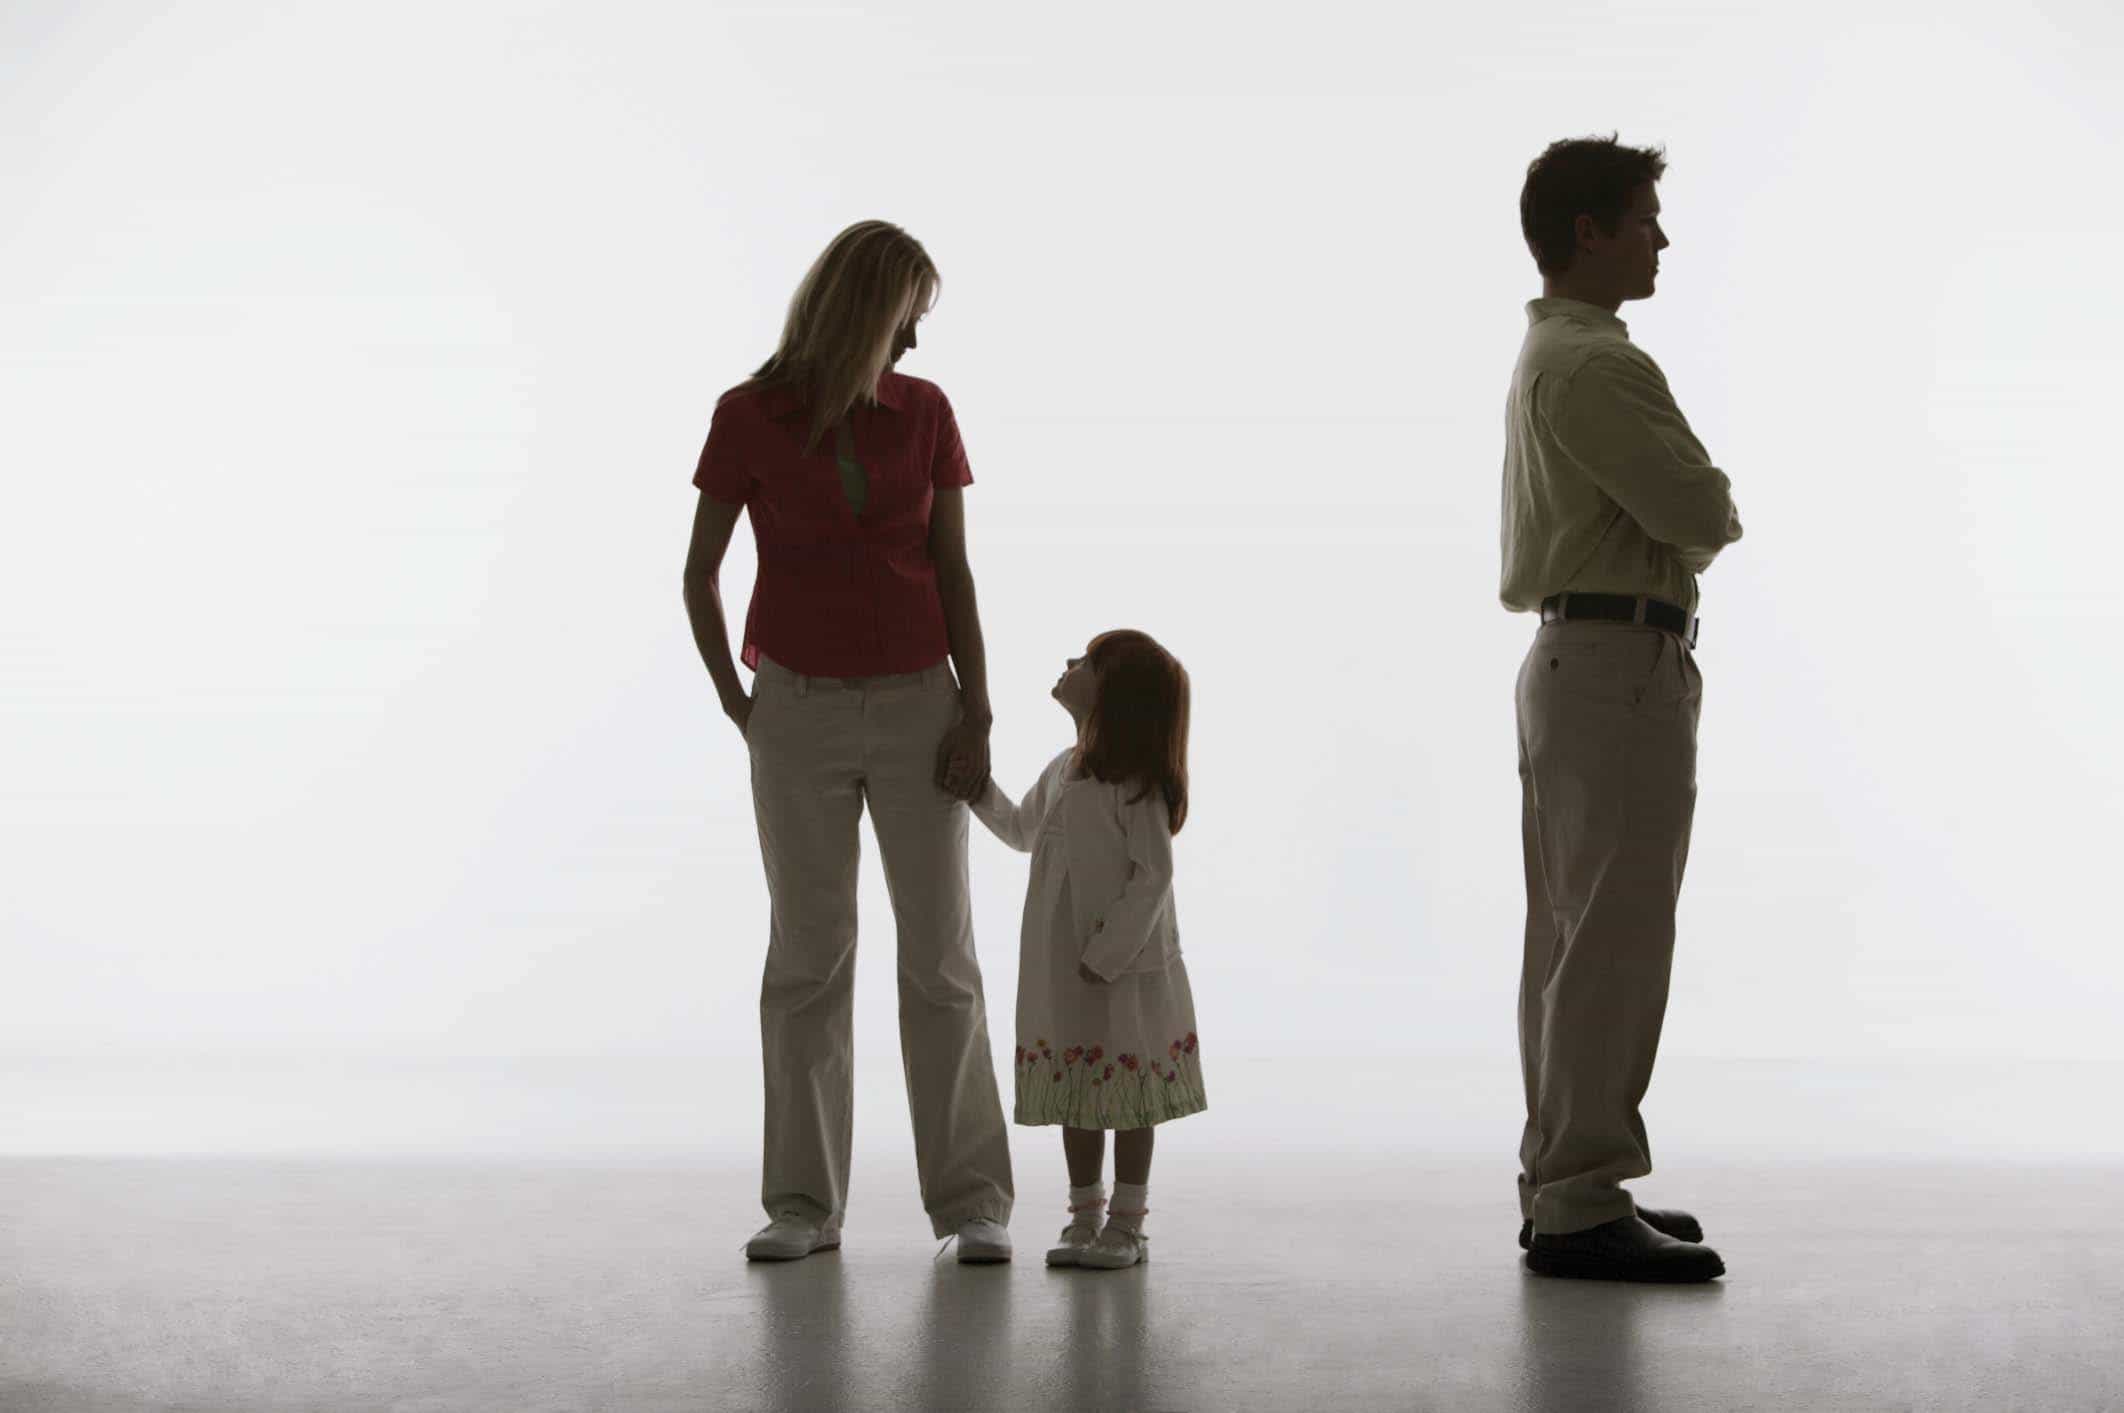 Phát hiện con chung không phải con của mình, chồng có quyền không nhận cha con hay không? Thủ tục thế nào?